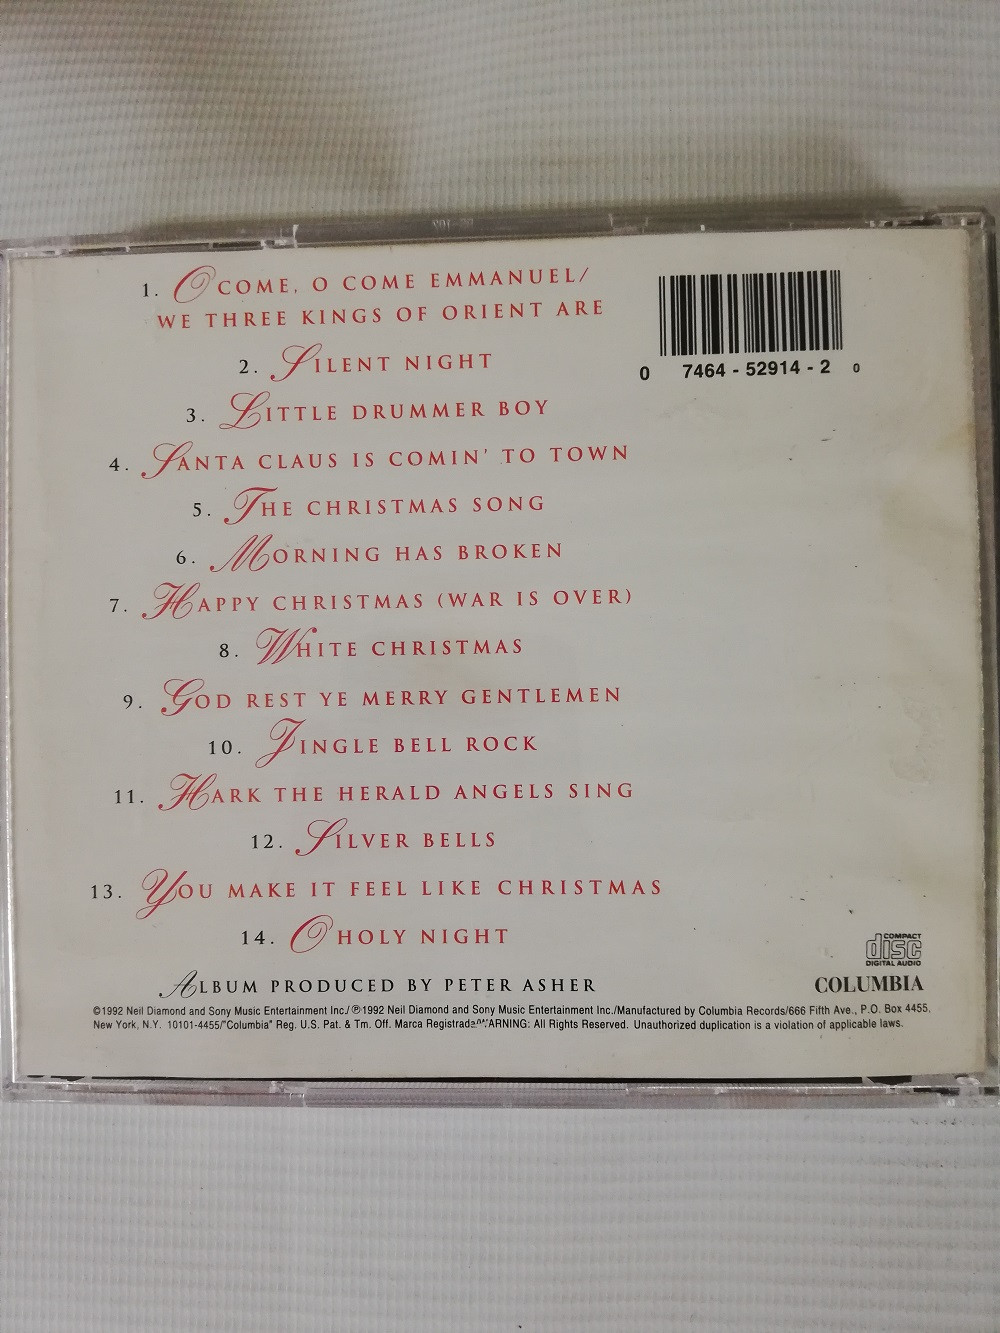 Imagen CD NEIL DIAMOND - THE CHRISTMAS ALBUM 2